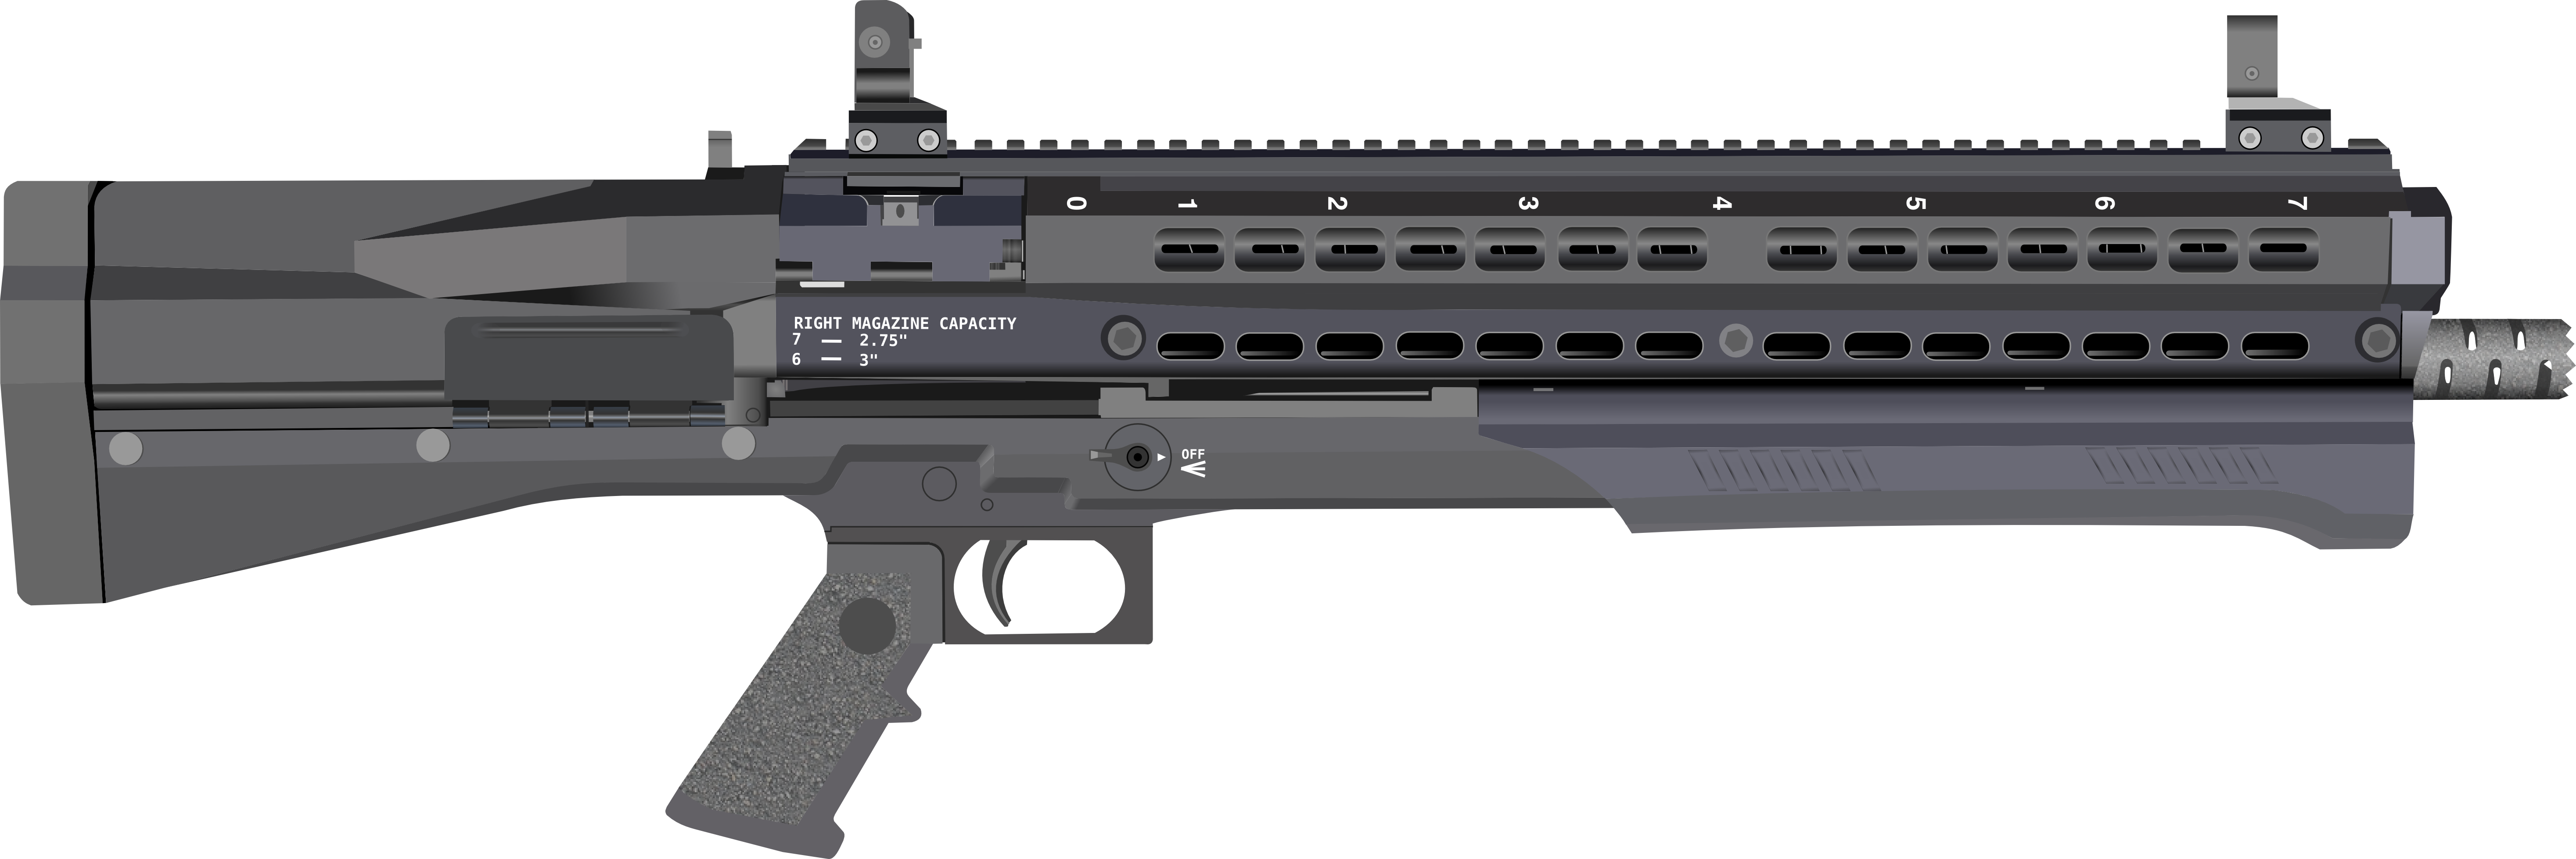 Utas Uts-15 Tactical Shotgun #20